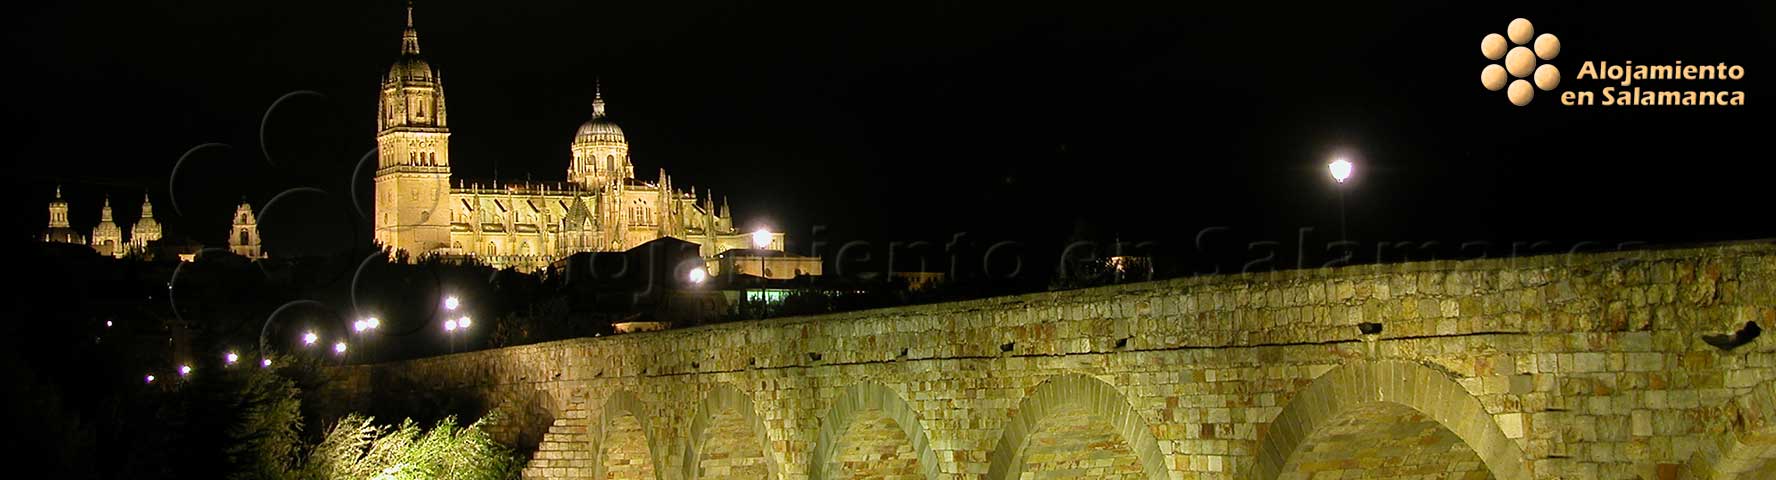 Salamanca nocturna: puente y catedrales.